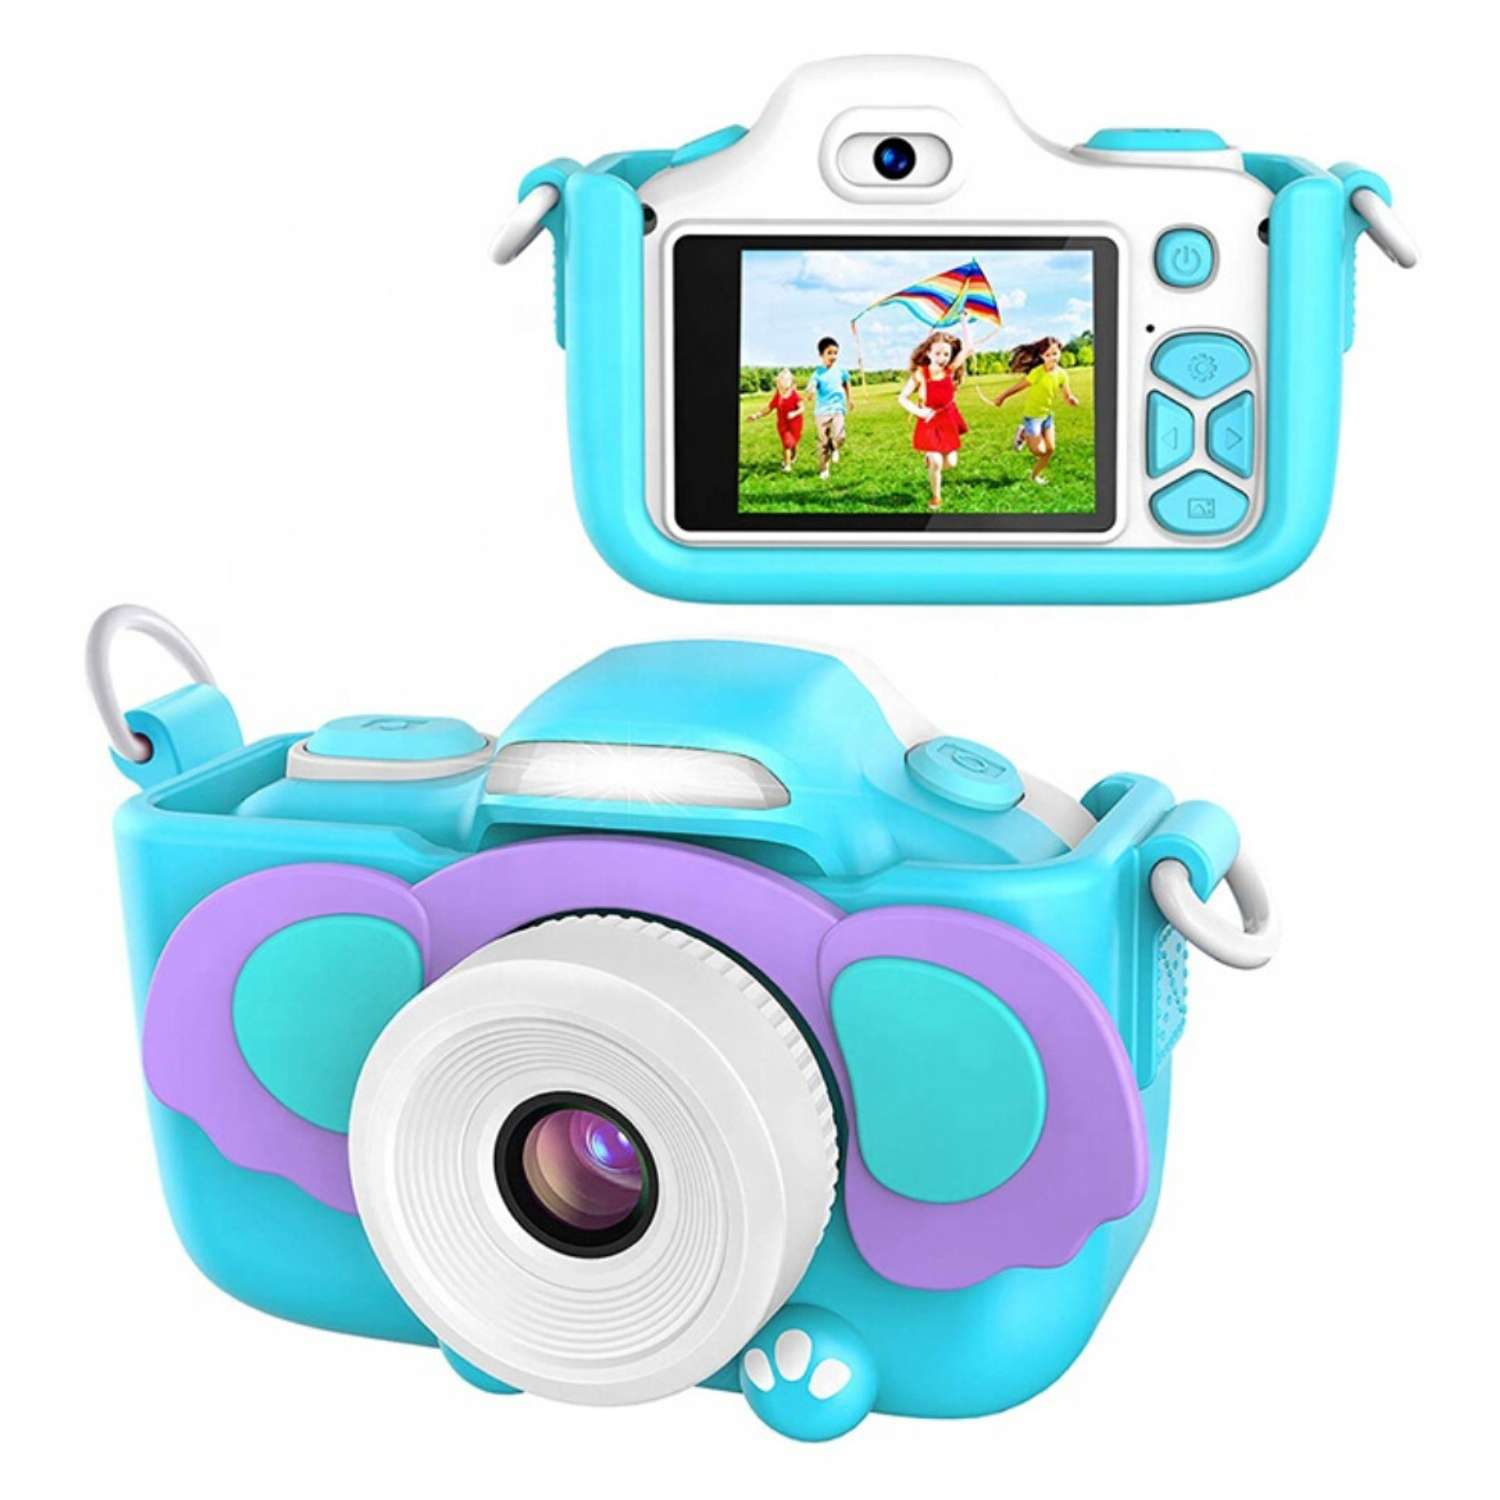 Детский фотоаппарат Ripoma со вспышкой и селфи камерой Слоник - фото 2